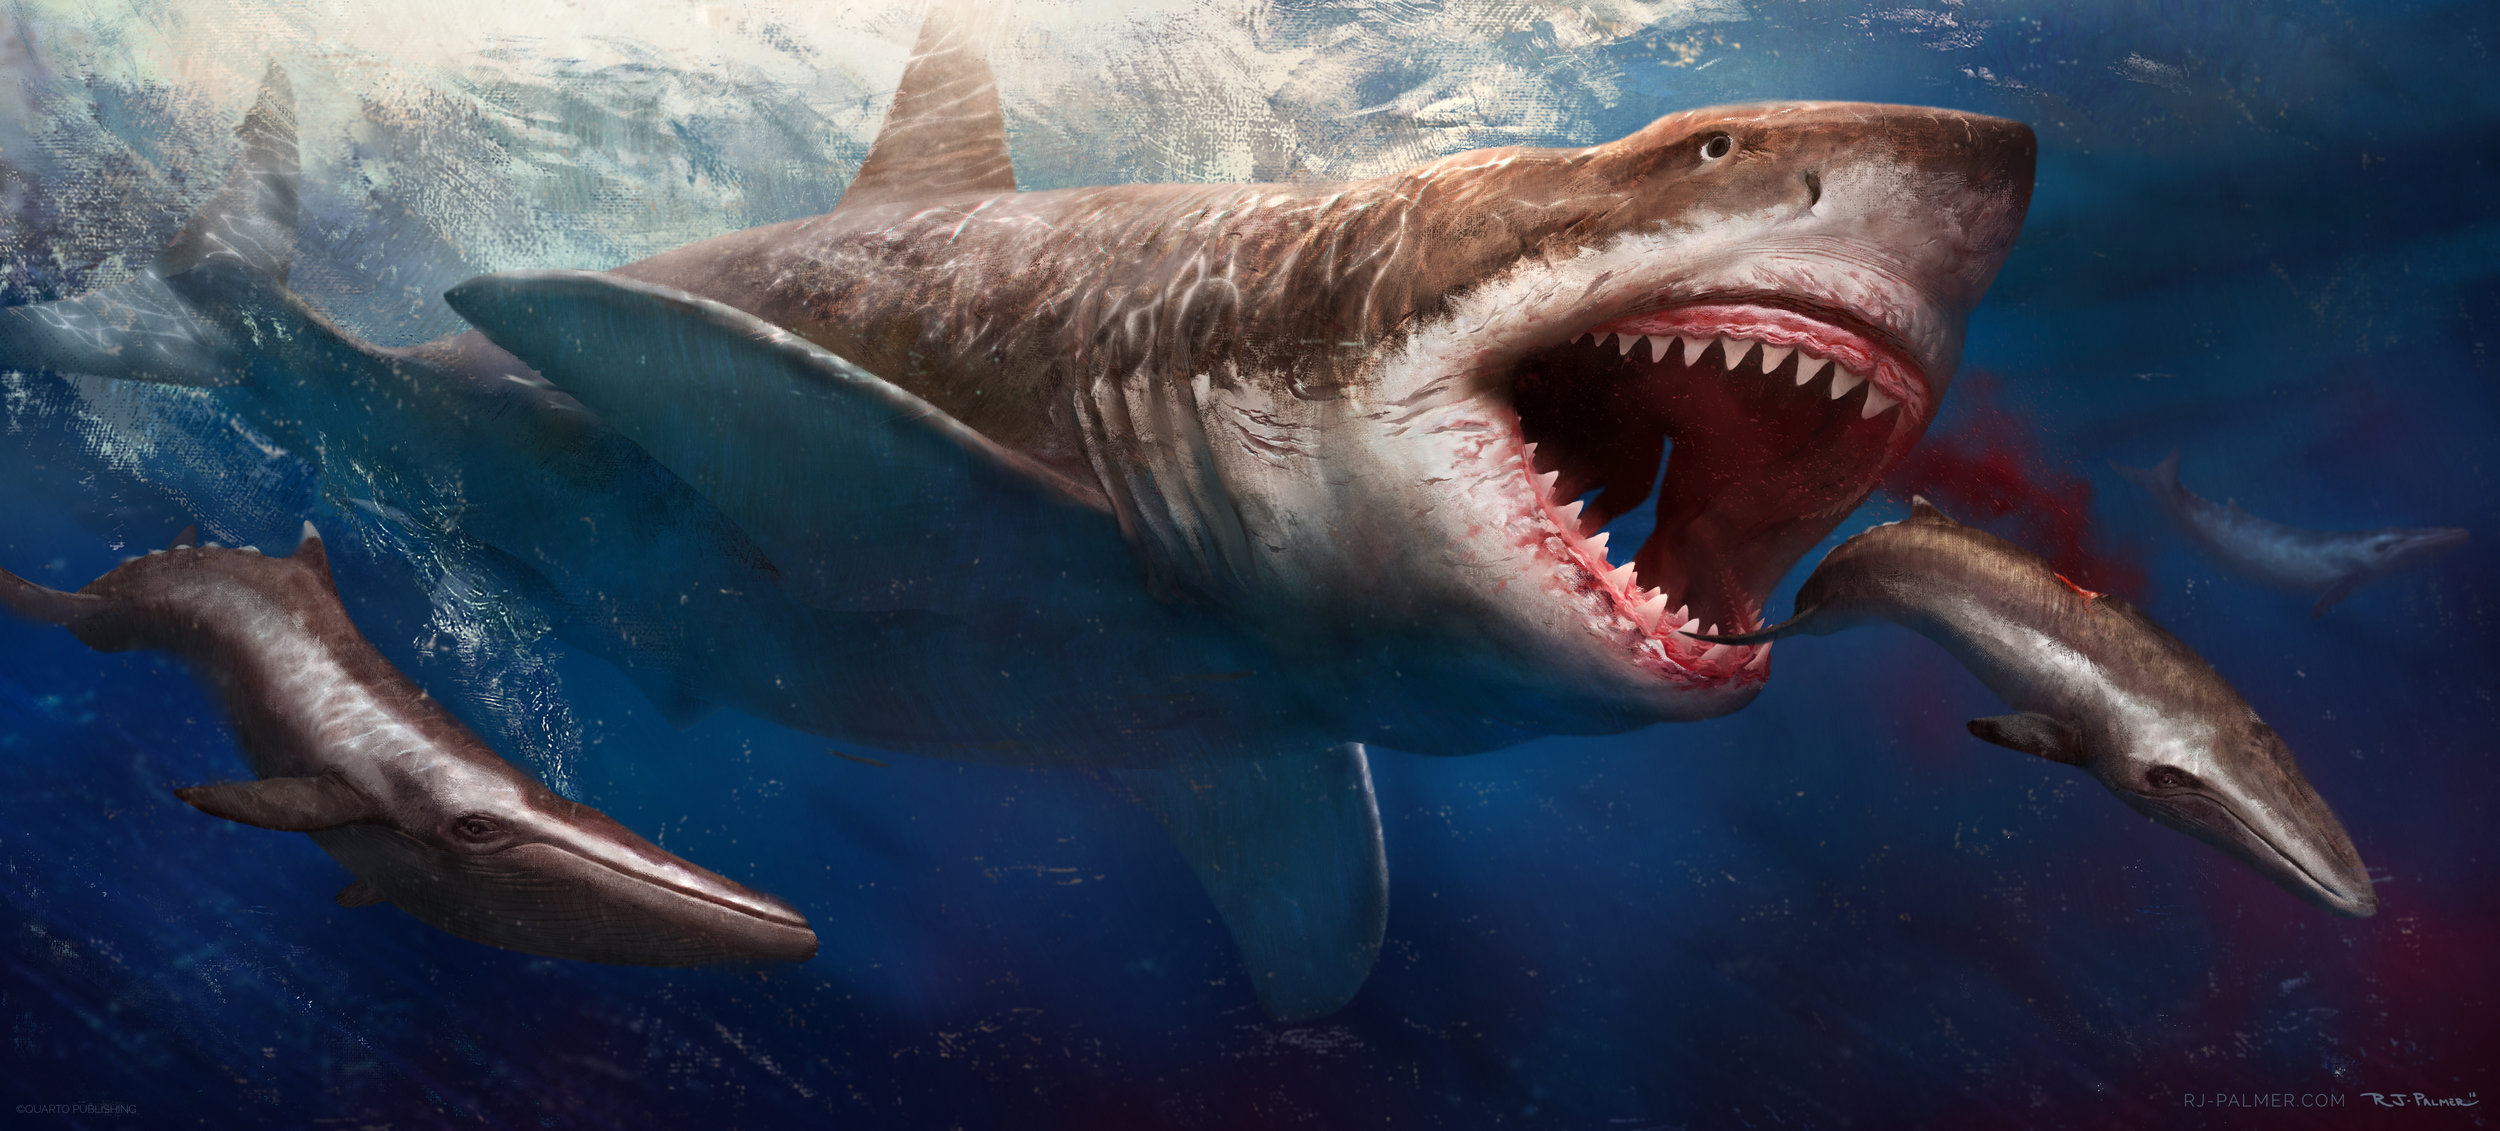 Мегалодон: по следам вымершей акулы – 7 фактов о мегалодоне